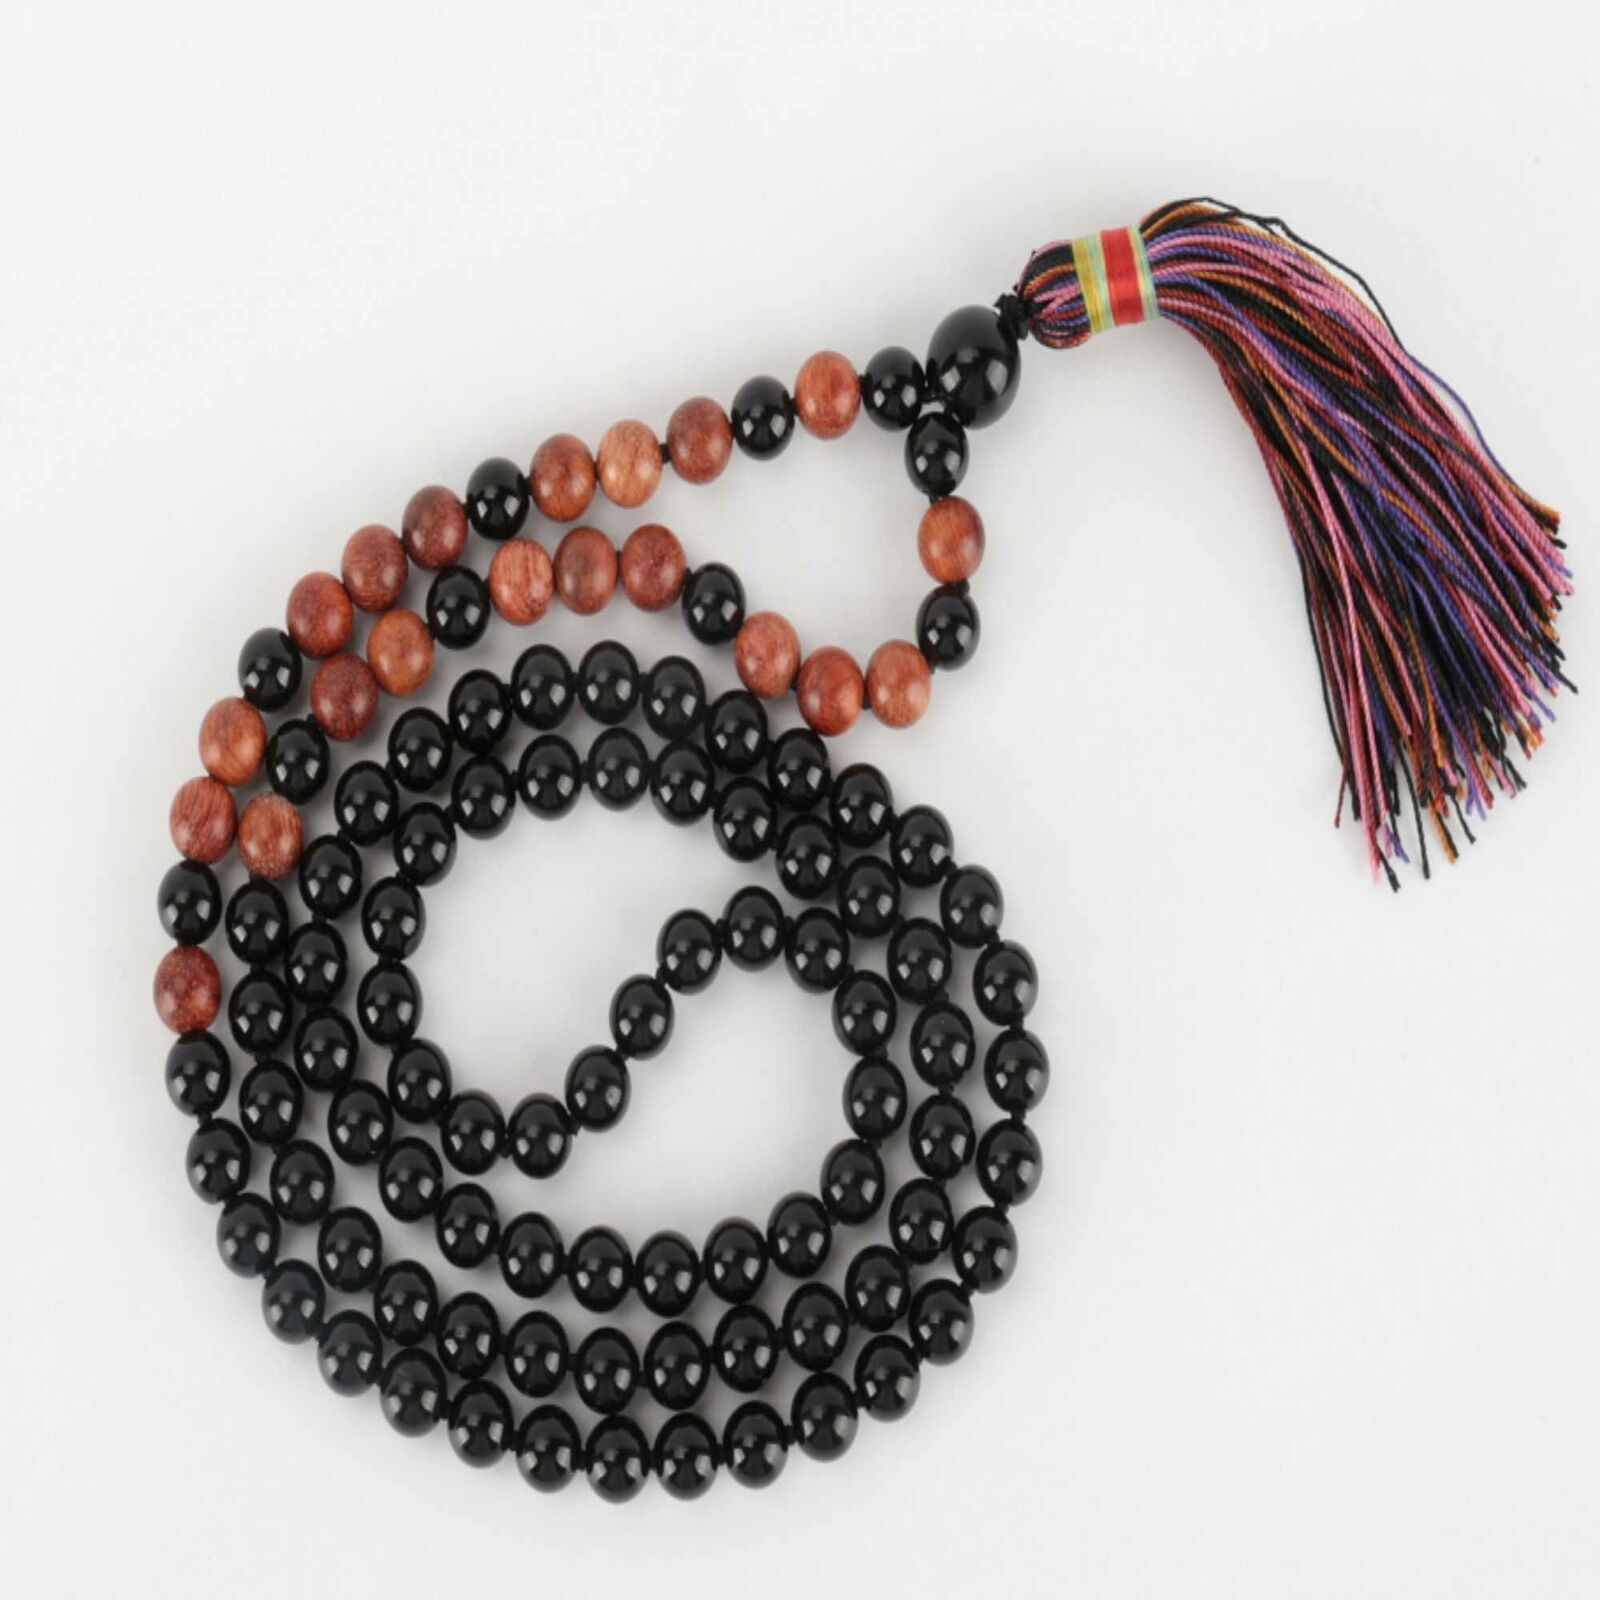 6mm 108 knot Natural black agate Sandalwood beads bracelet gift Dark Matter